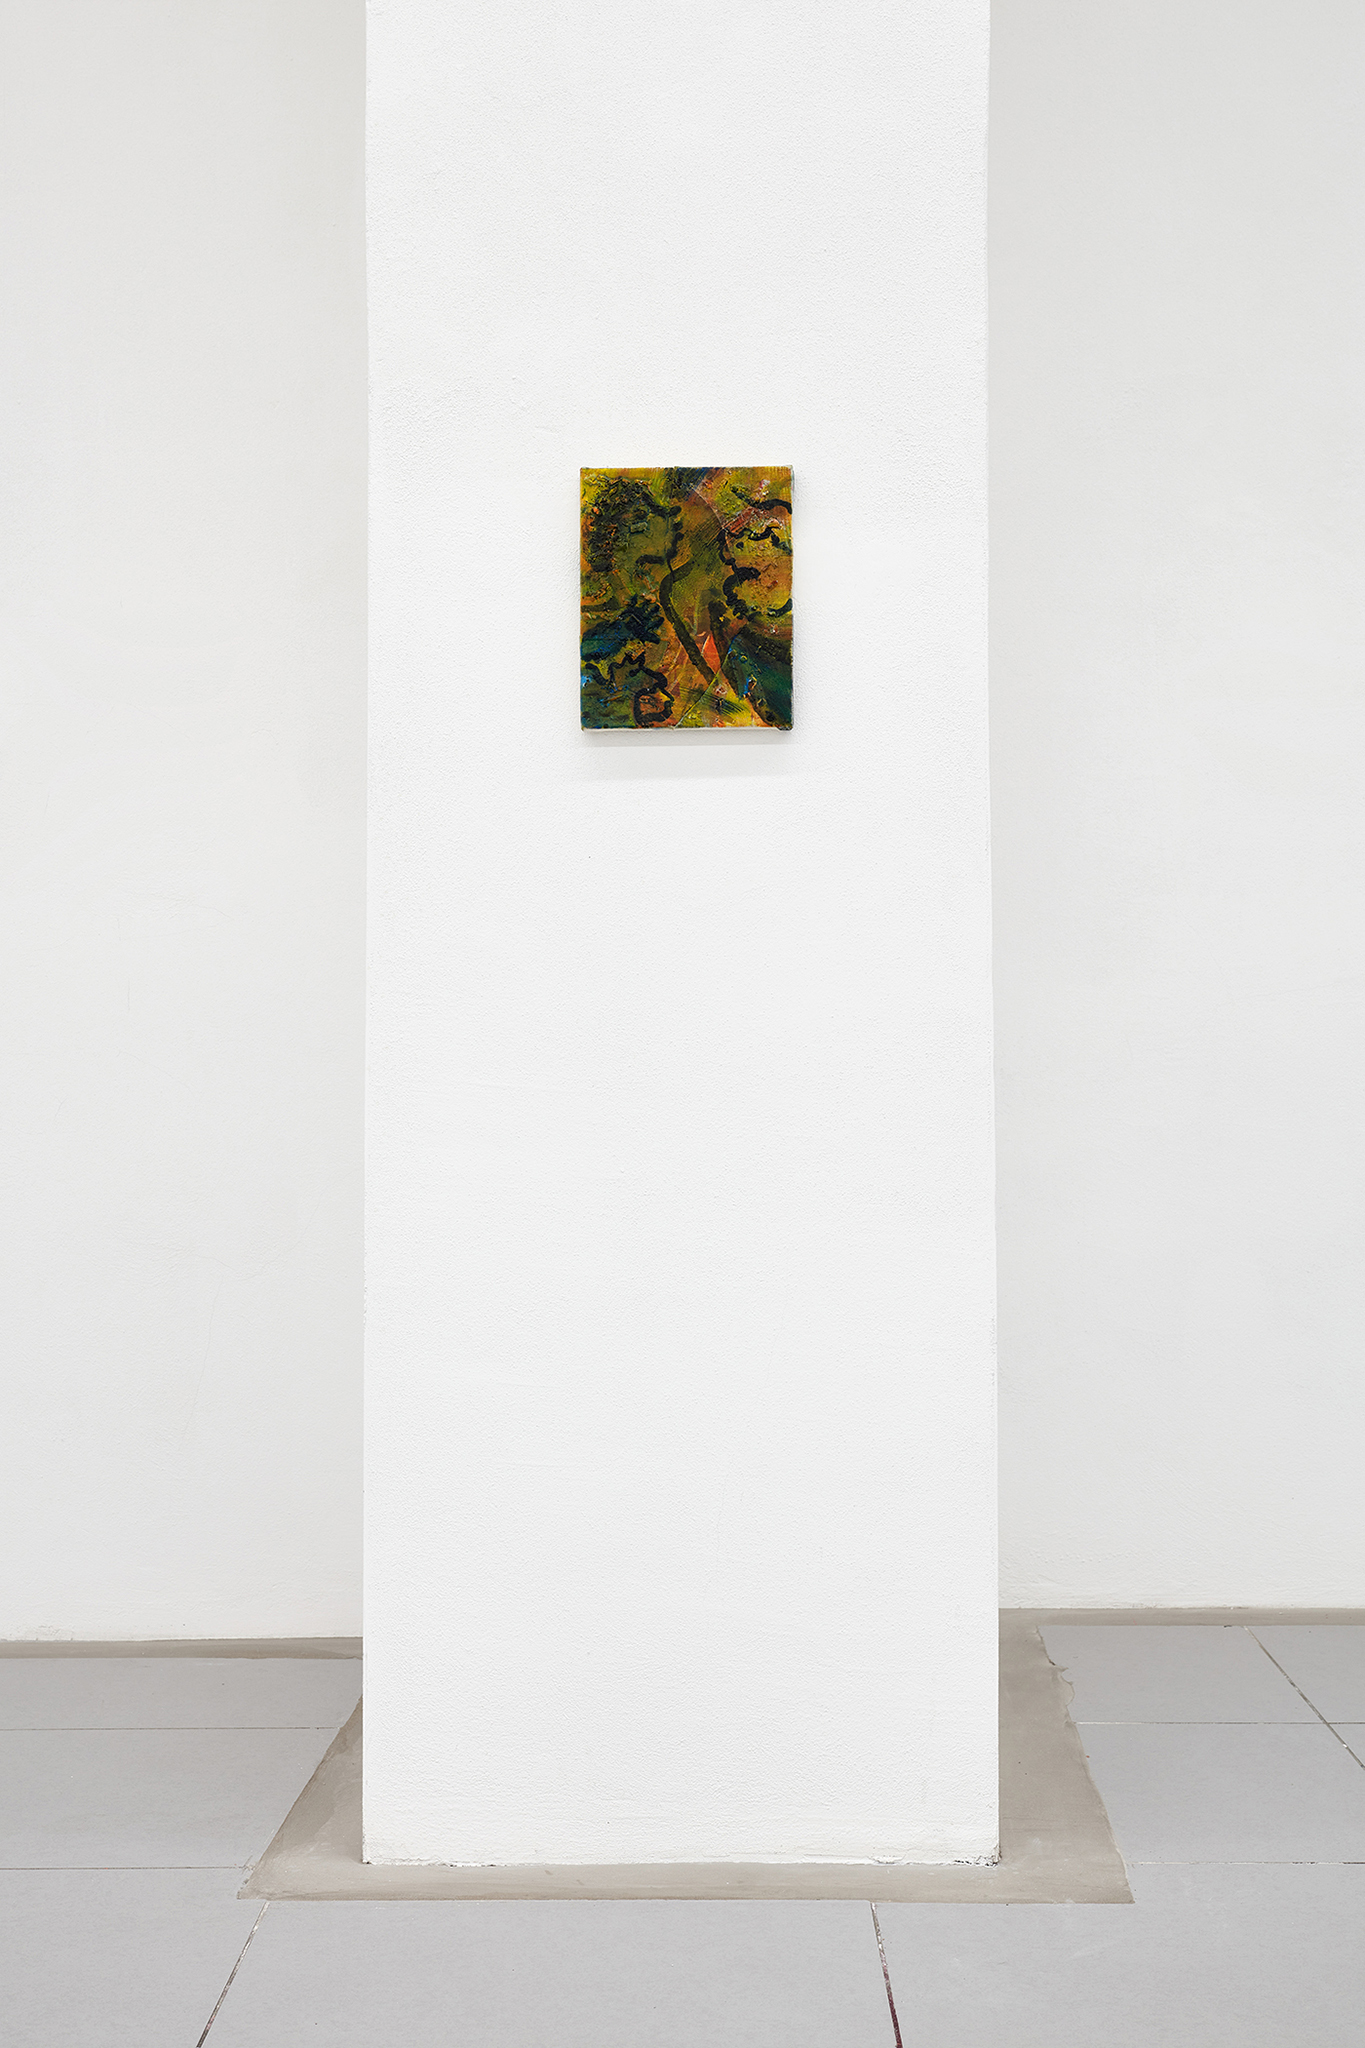 Anna Schachinger, "Klippe", 2023 (Oil and linen on linen, 27,5 x 22,3 cm).